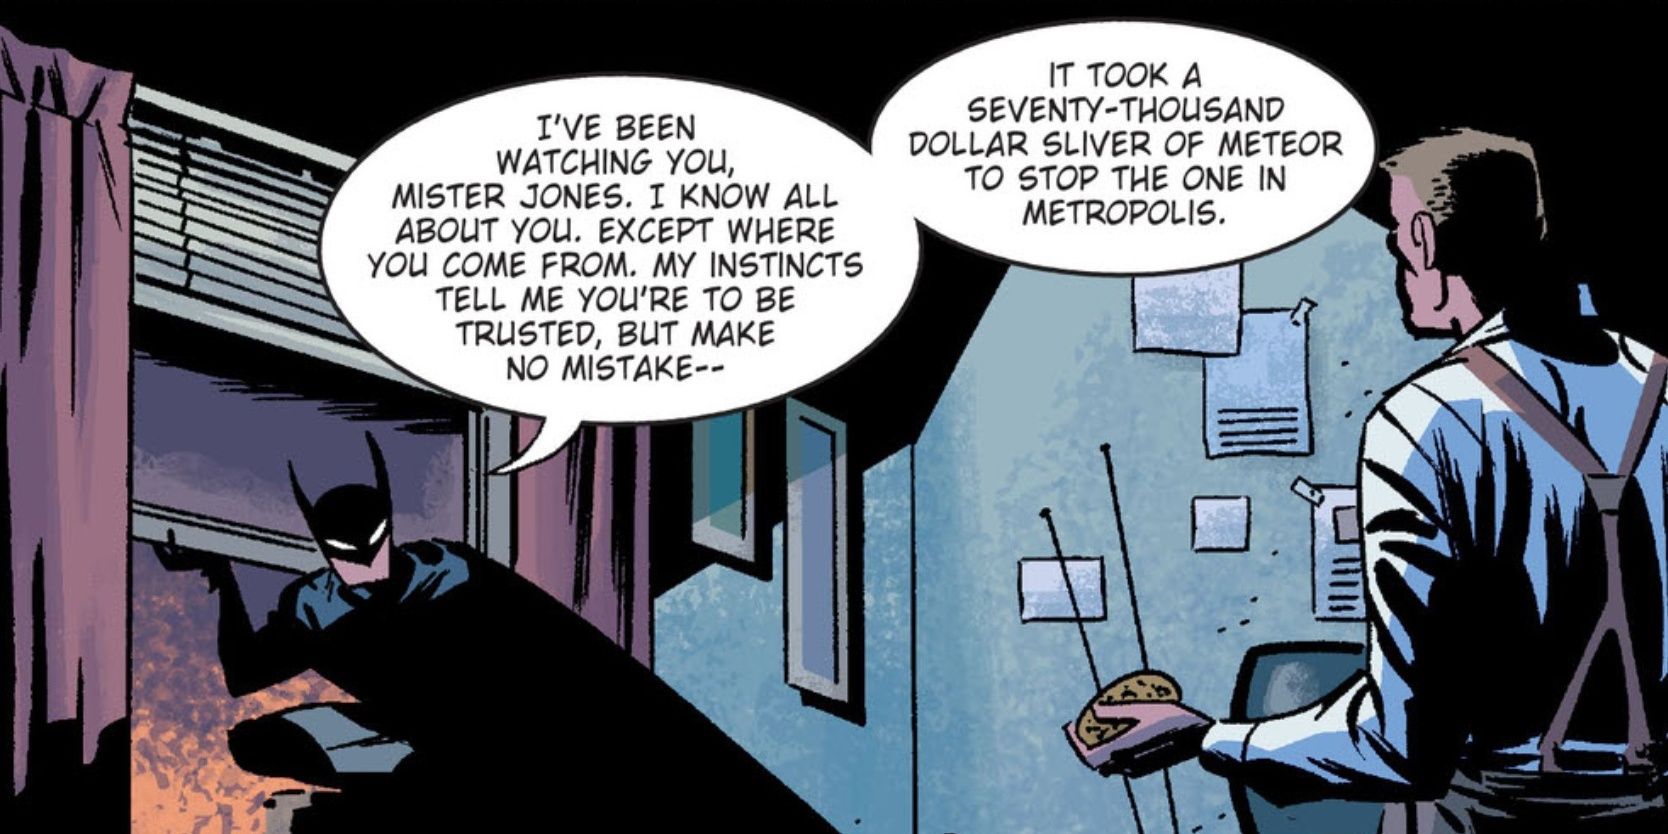 In John Jones' apartment Batman, says he has been spying on him in DC.